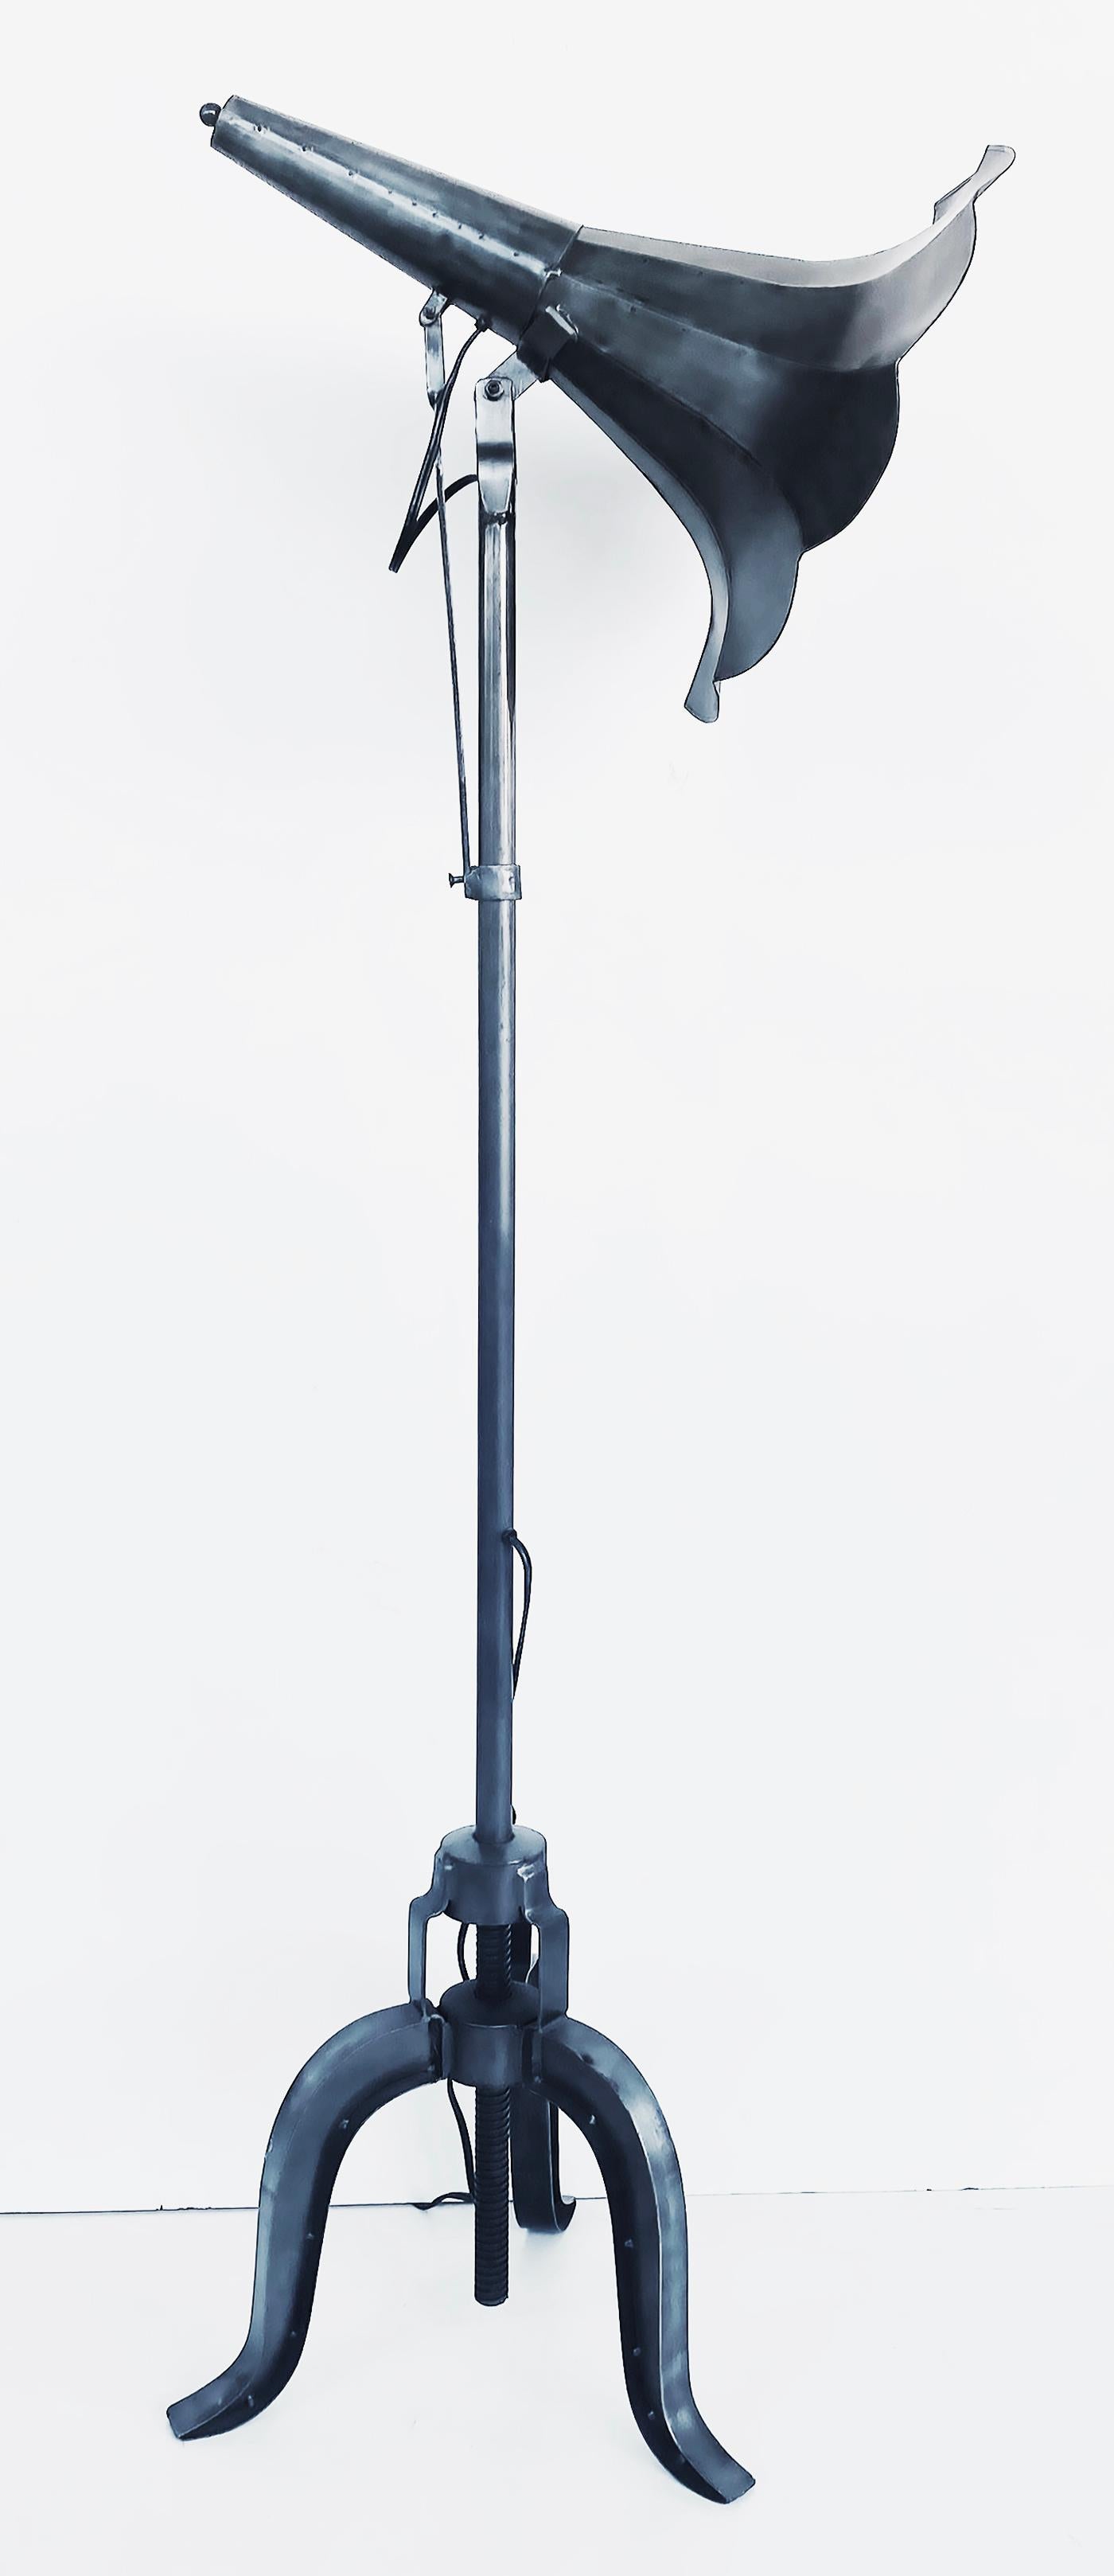 Lampadaire réglable en métal industriel Sound Horn avec interrupteur au sol

Horn est un intéressant lampadaire vintage qui a été créé avec un cornet de projection sonore de style Edison en guise d'abat-jour pour la source lumineuse. La lumière peut